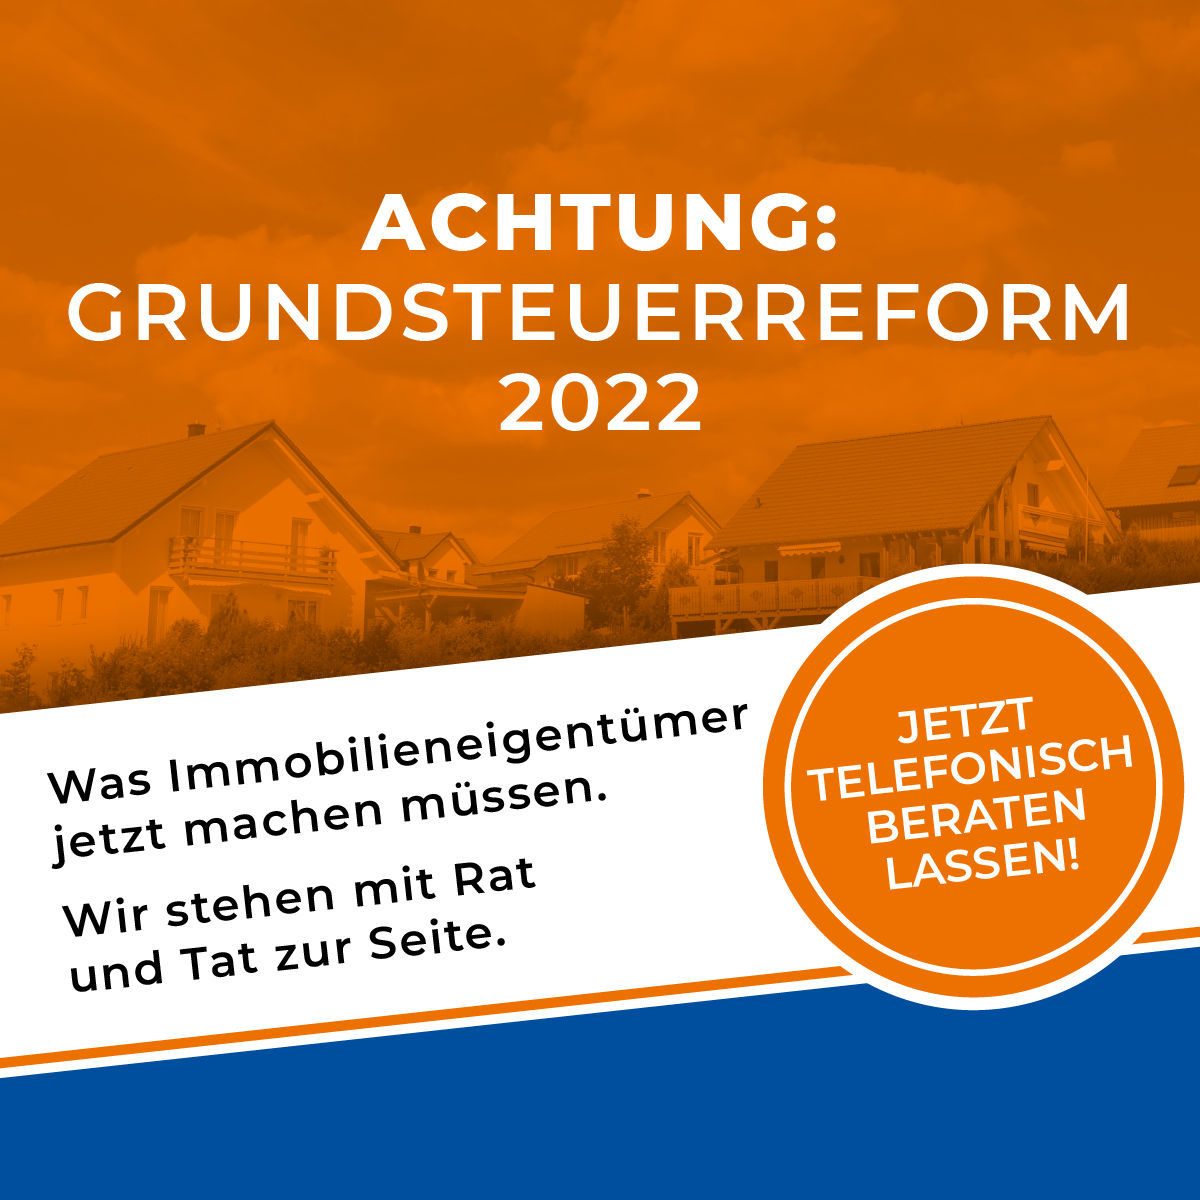 Grundsteuerreform Fristverlängerung bis zum 31. Januar 2023 - Ihr Immobilienmakler in München unterstützt.